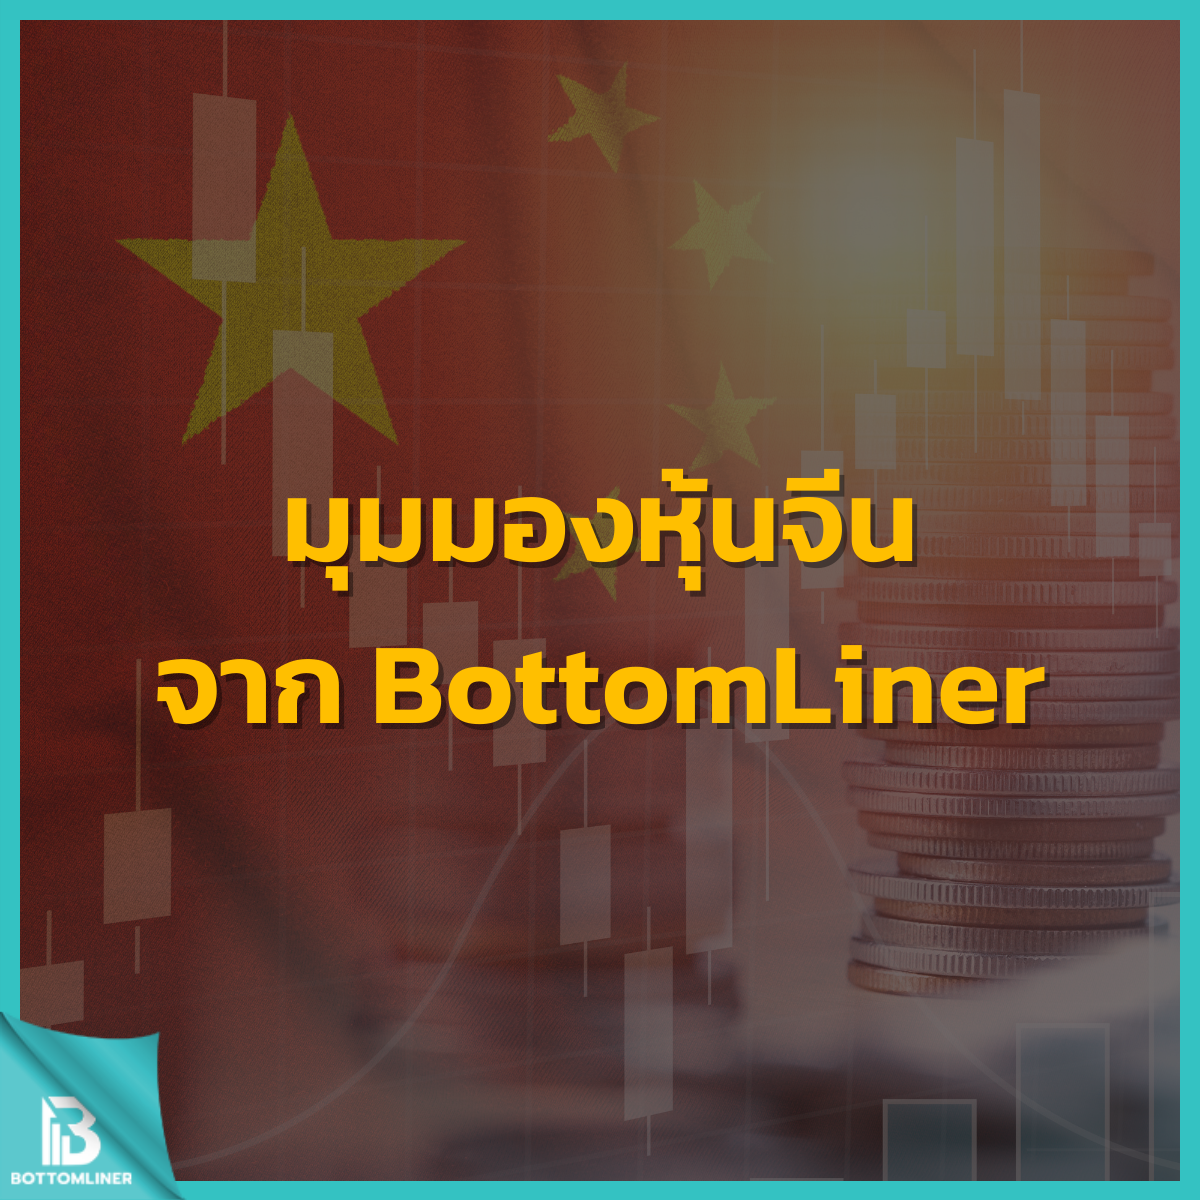 มุมมองหุ้นจีนจาก BottomLiner